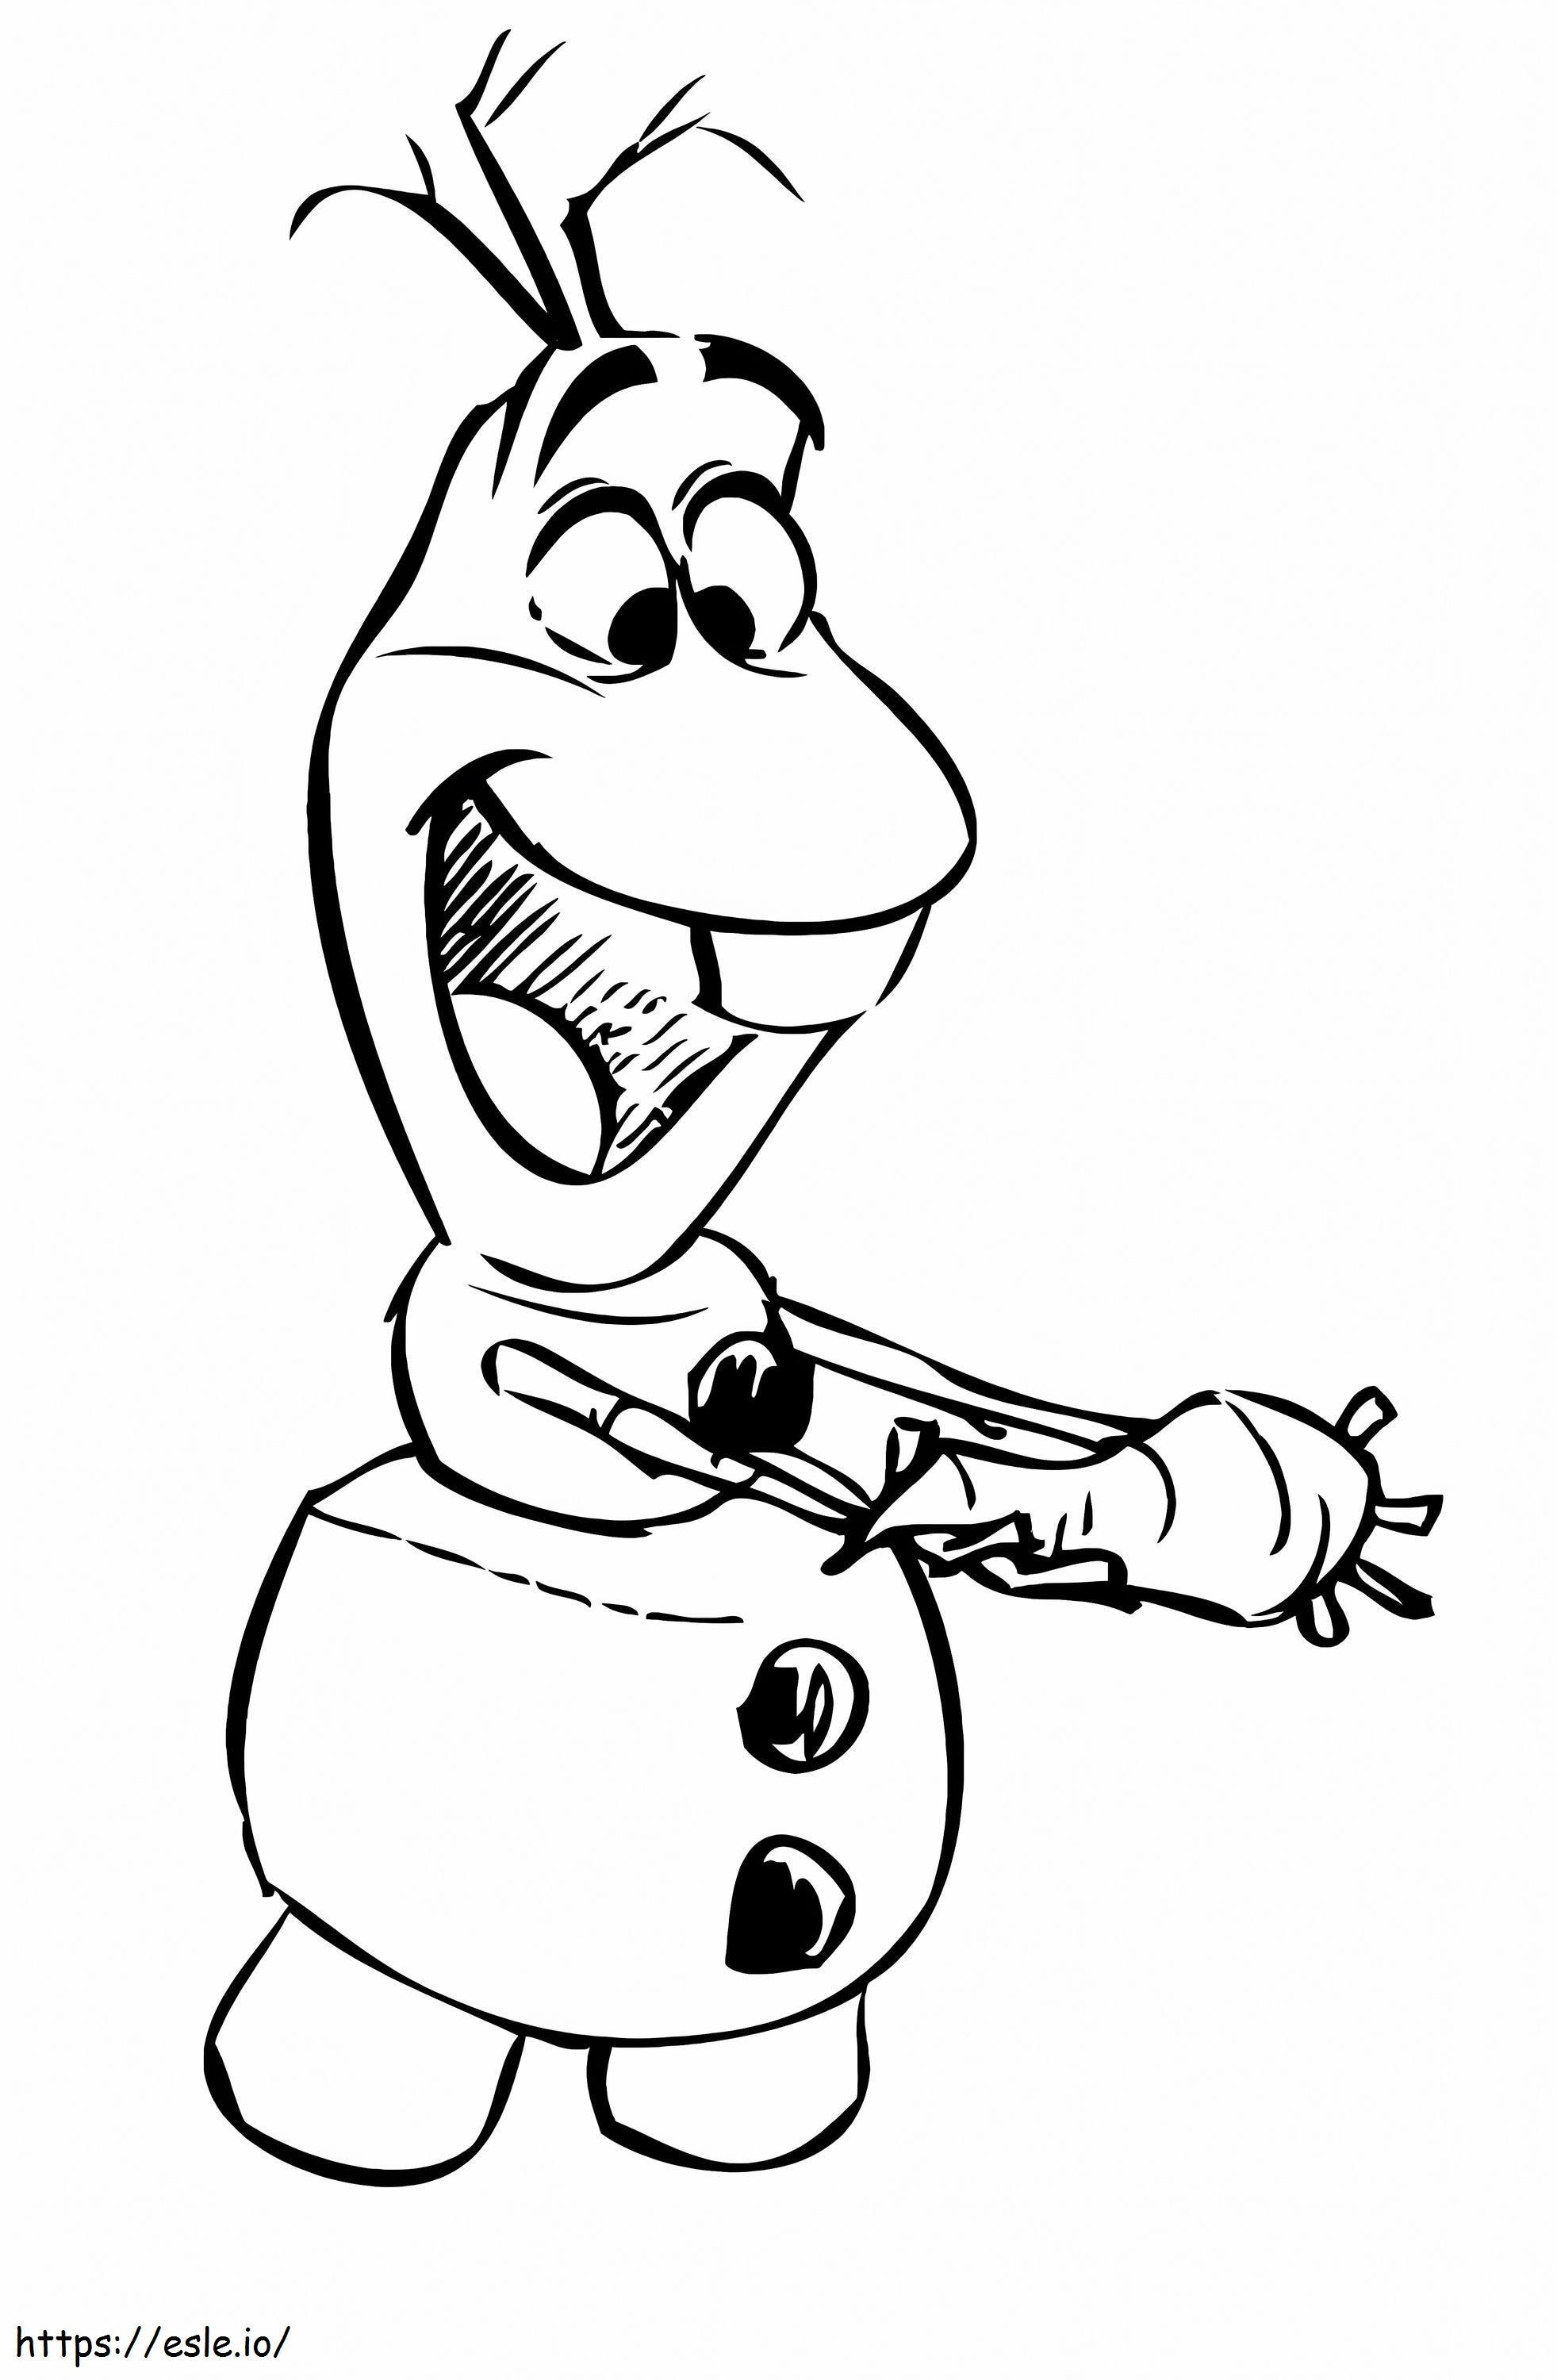 Dibujando a Olaf con una zanahoria para colorear